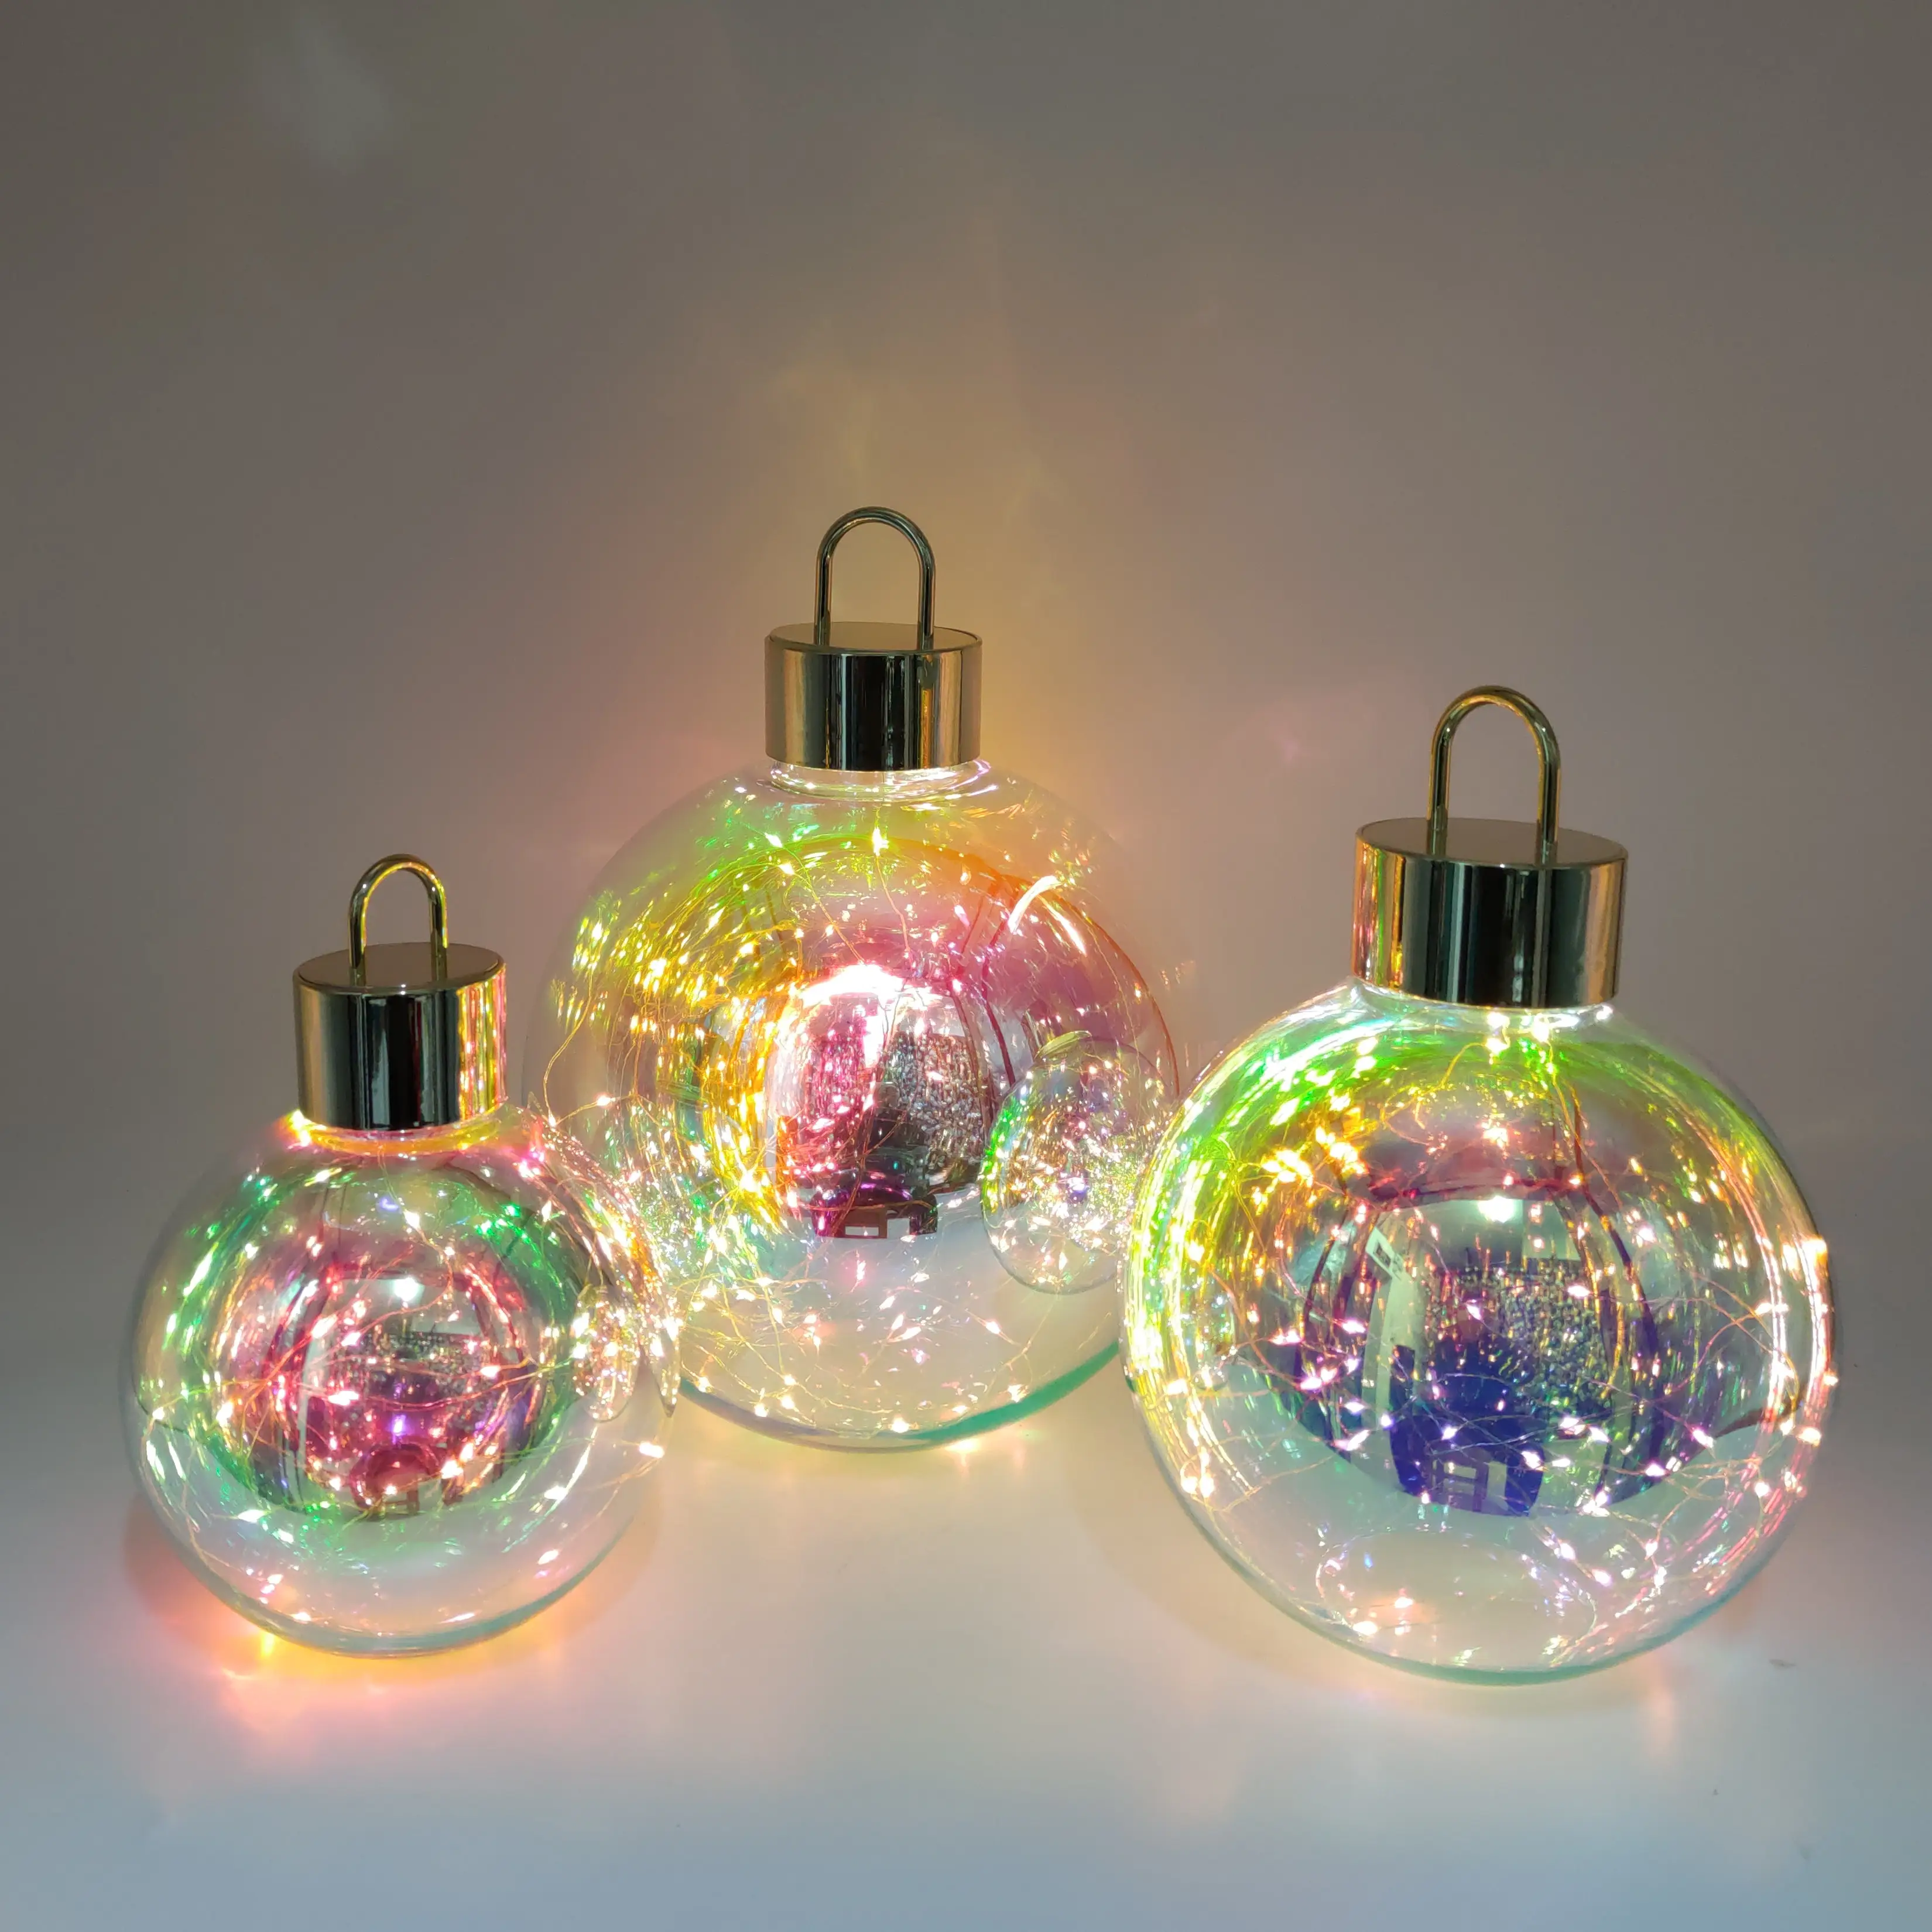 Vente en gros Lampe Sphères Globe LED Fantaisie Géant Irisé de Noël Grande Boule Artisanale pour la Décoration